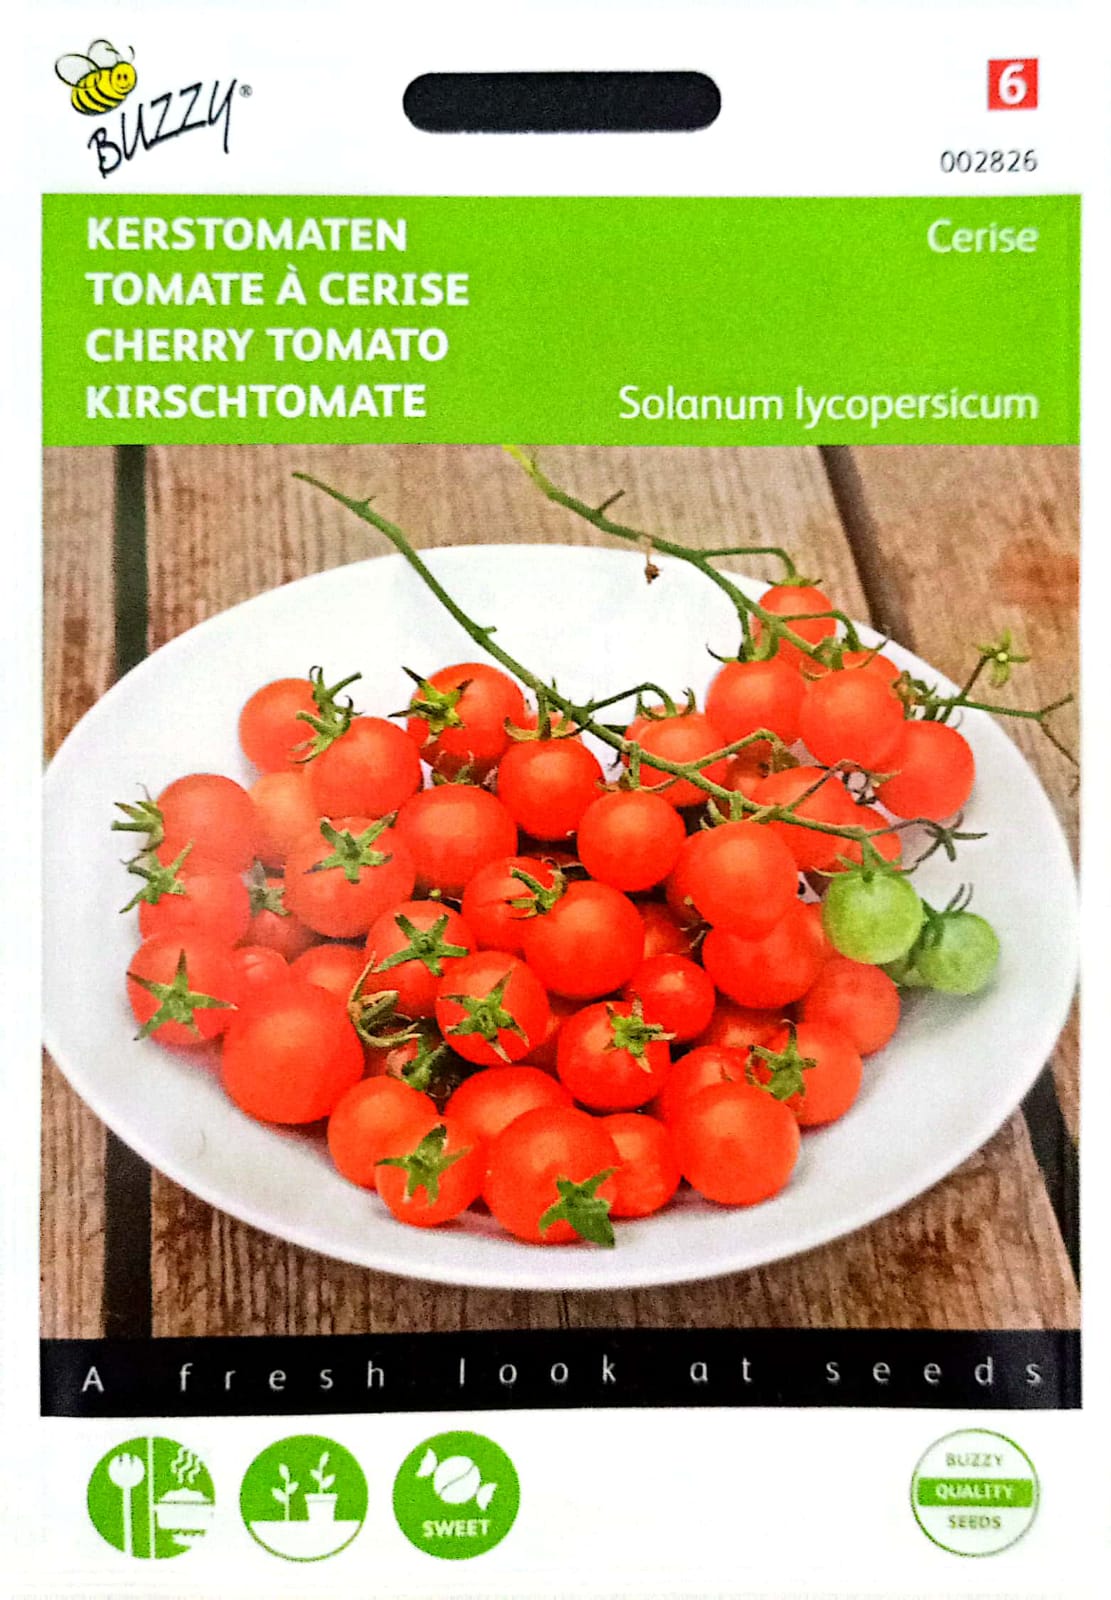 Cherry Tomato Cerise 002826